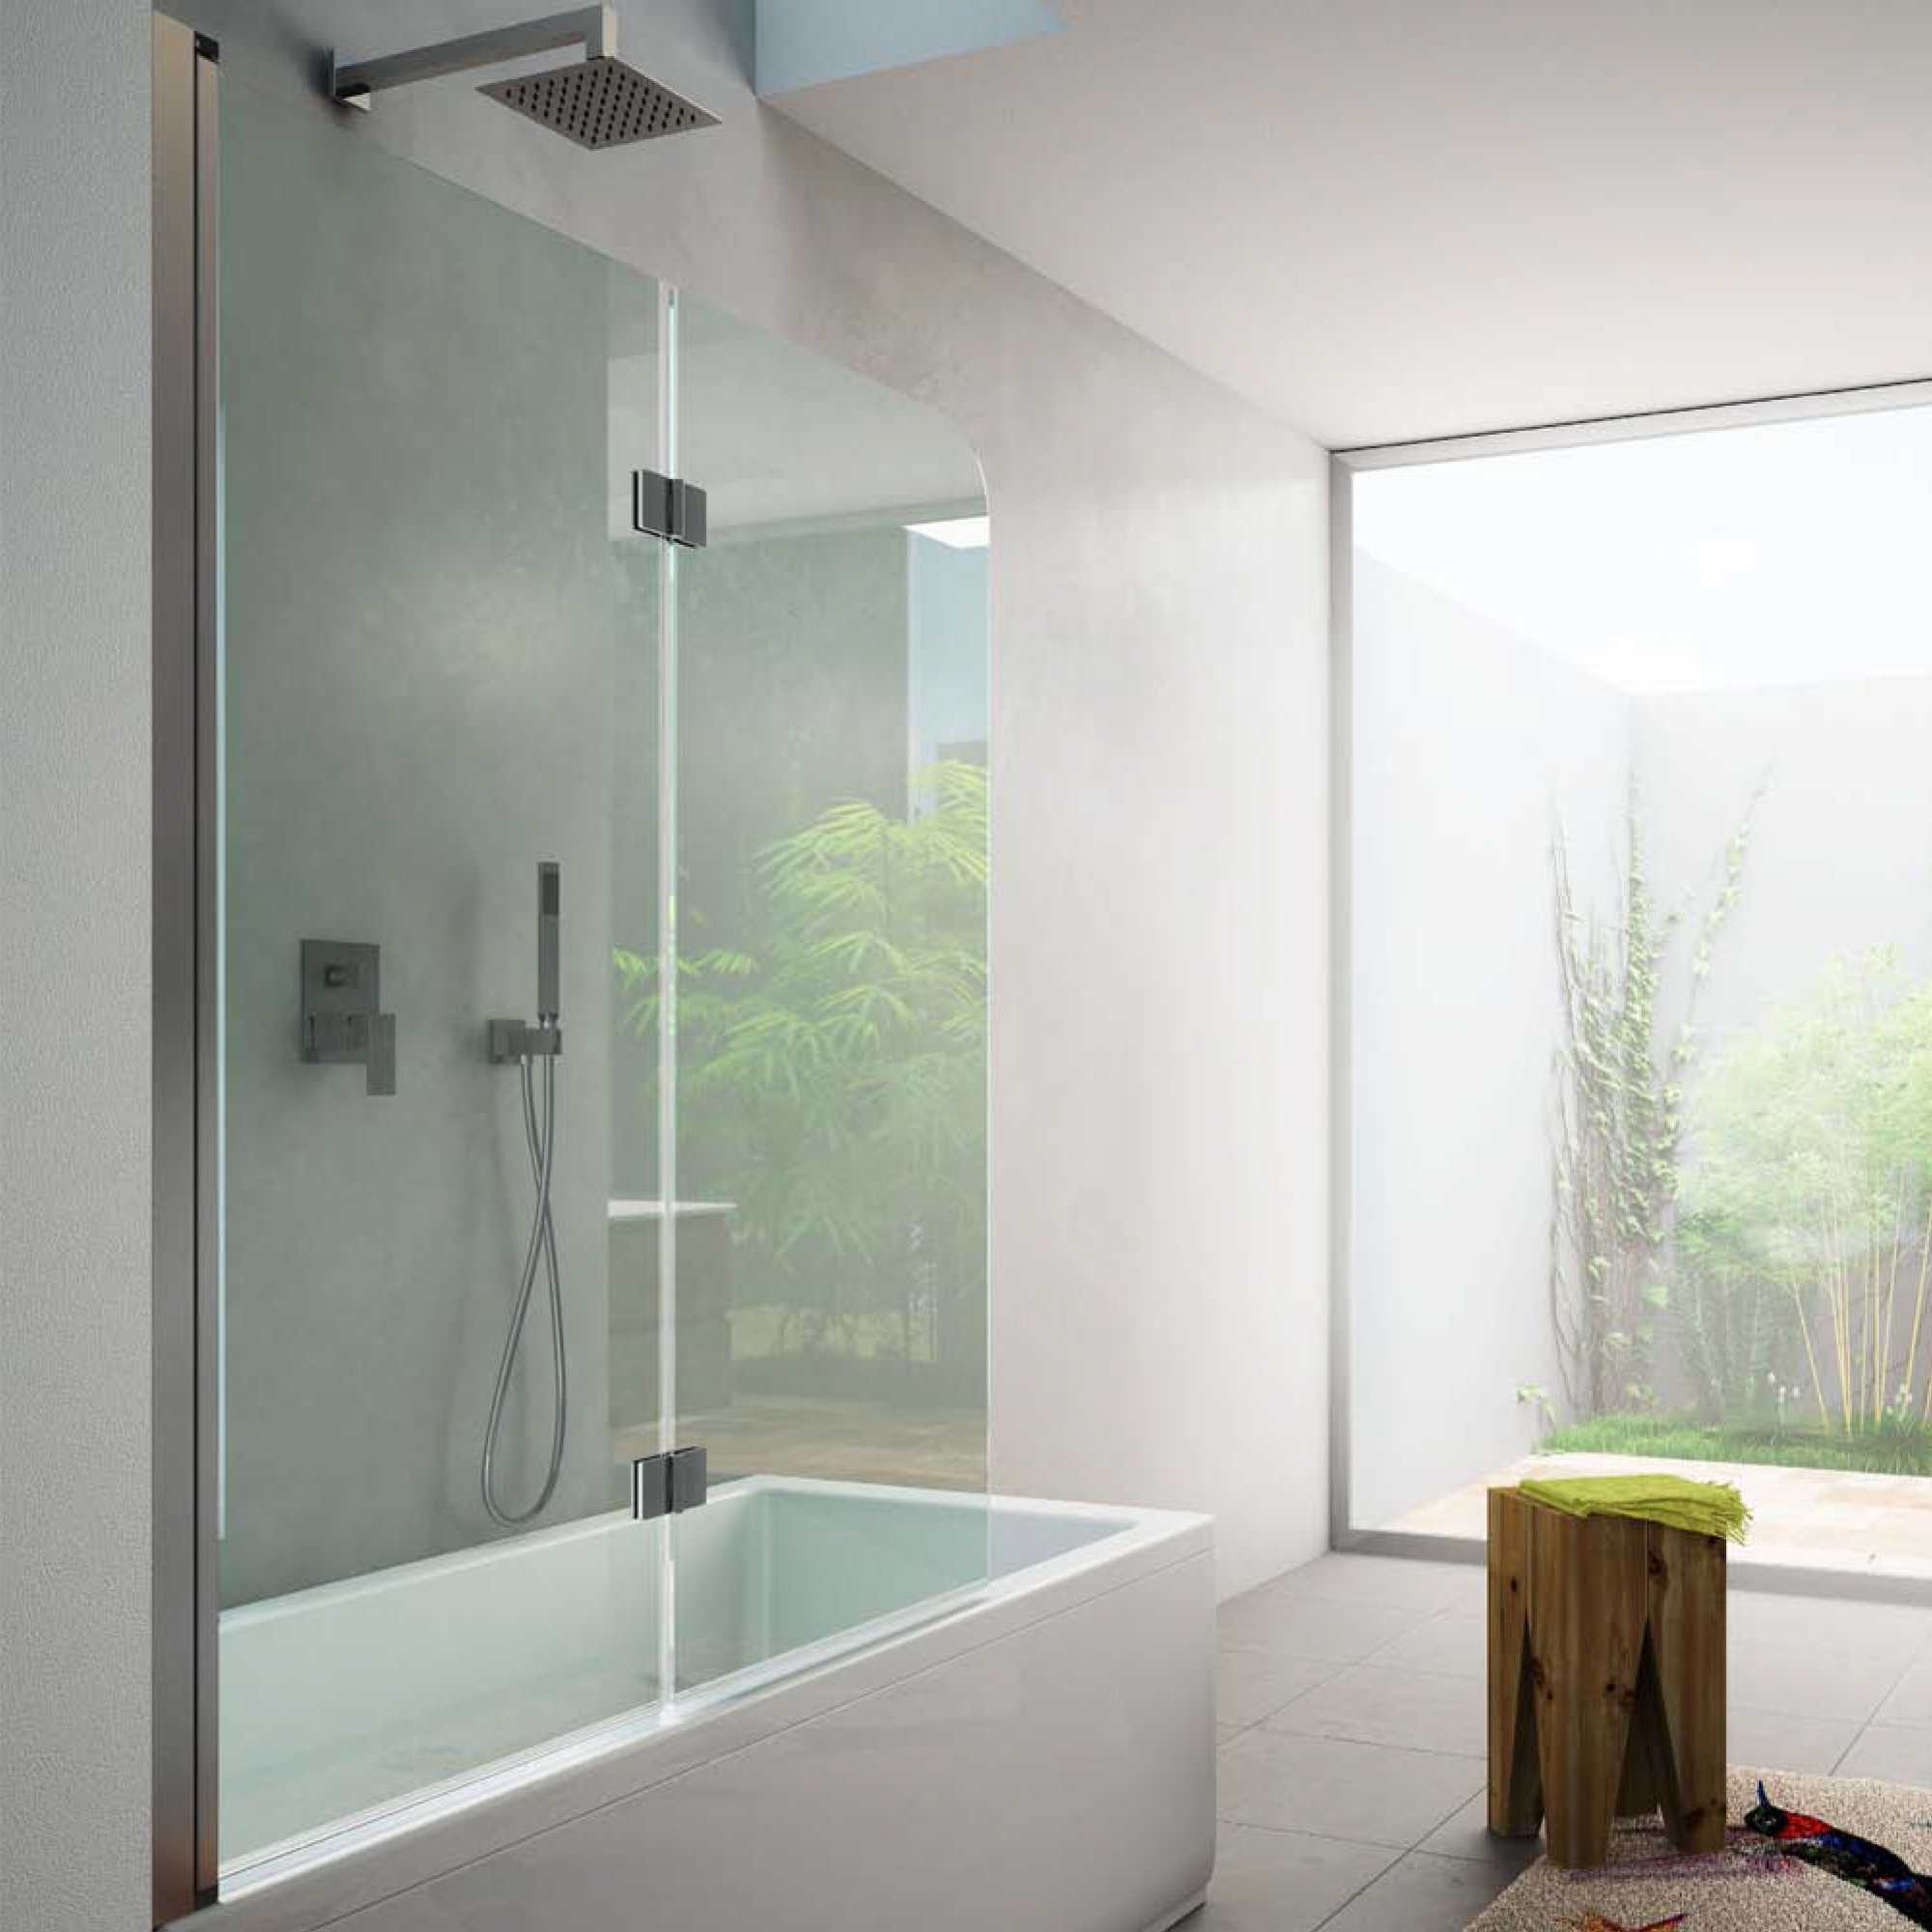 Cabine de douche à installation rapide, verre trempé de sécurité, enceinte  de douche carrée Salle de douche 900X900mm - Chine Salle de douche, enceinte  de douche